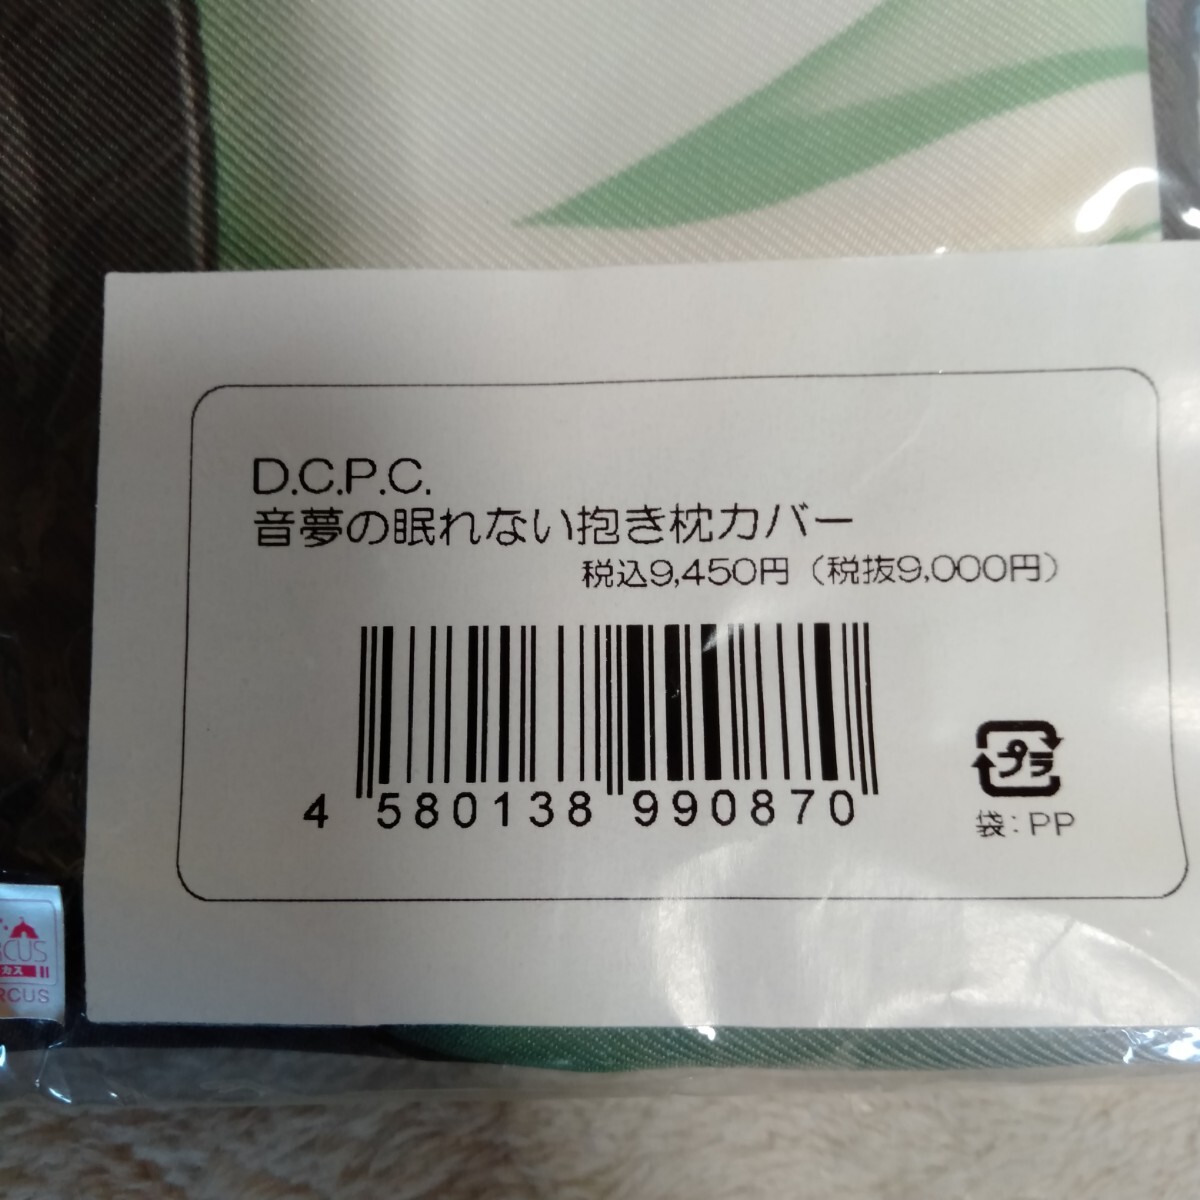 ka516 не использовался D.C.P.C. звук сон. .. нет Dakimakura покрытие аниме товары 